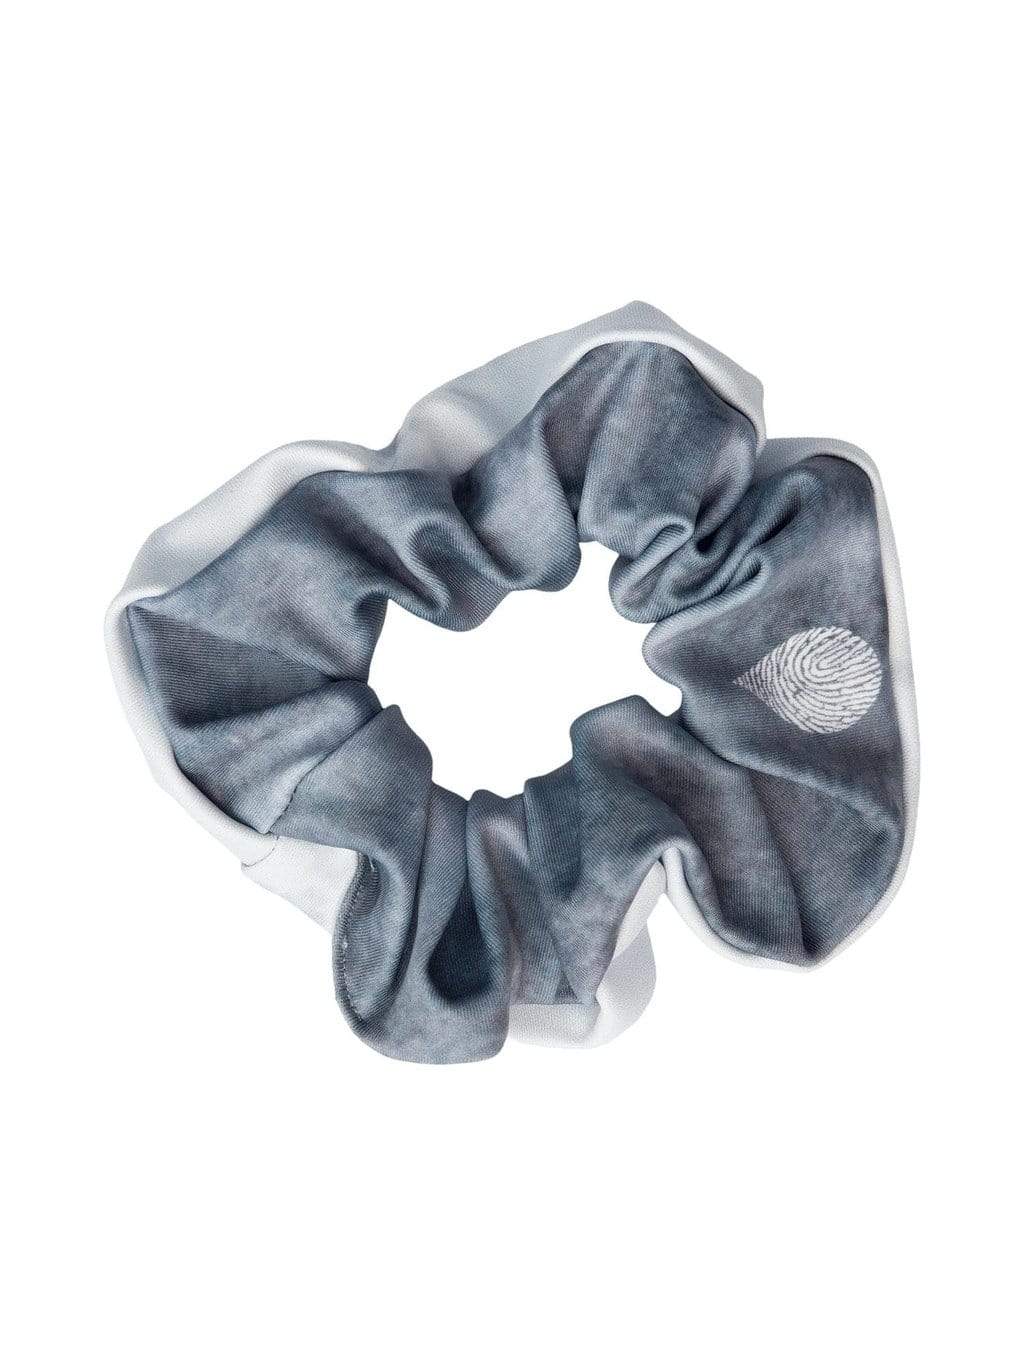 Waterlust Printed Scrunchie Made From Pre-Consumer Waste Tiger Shark Trailblazer